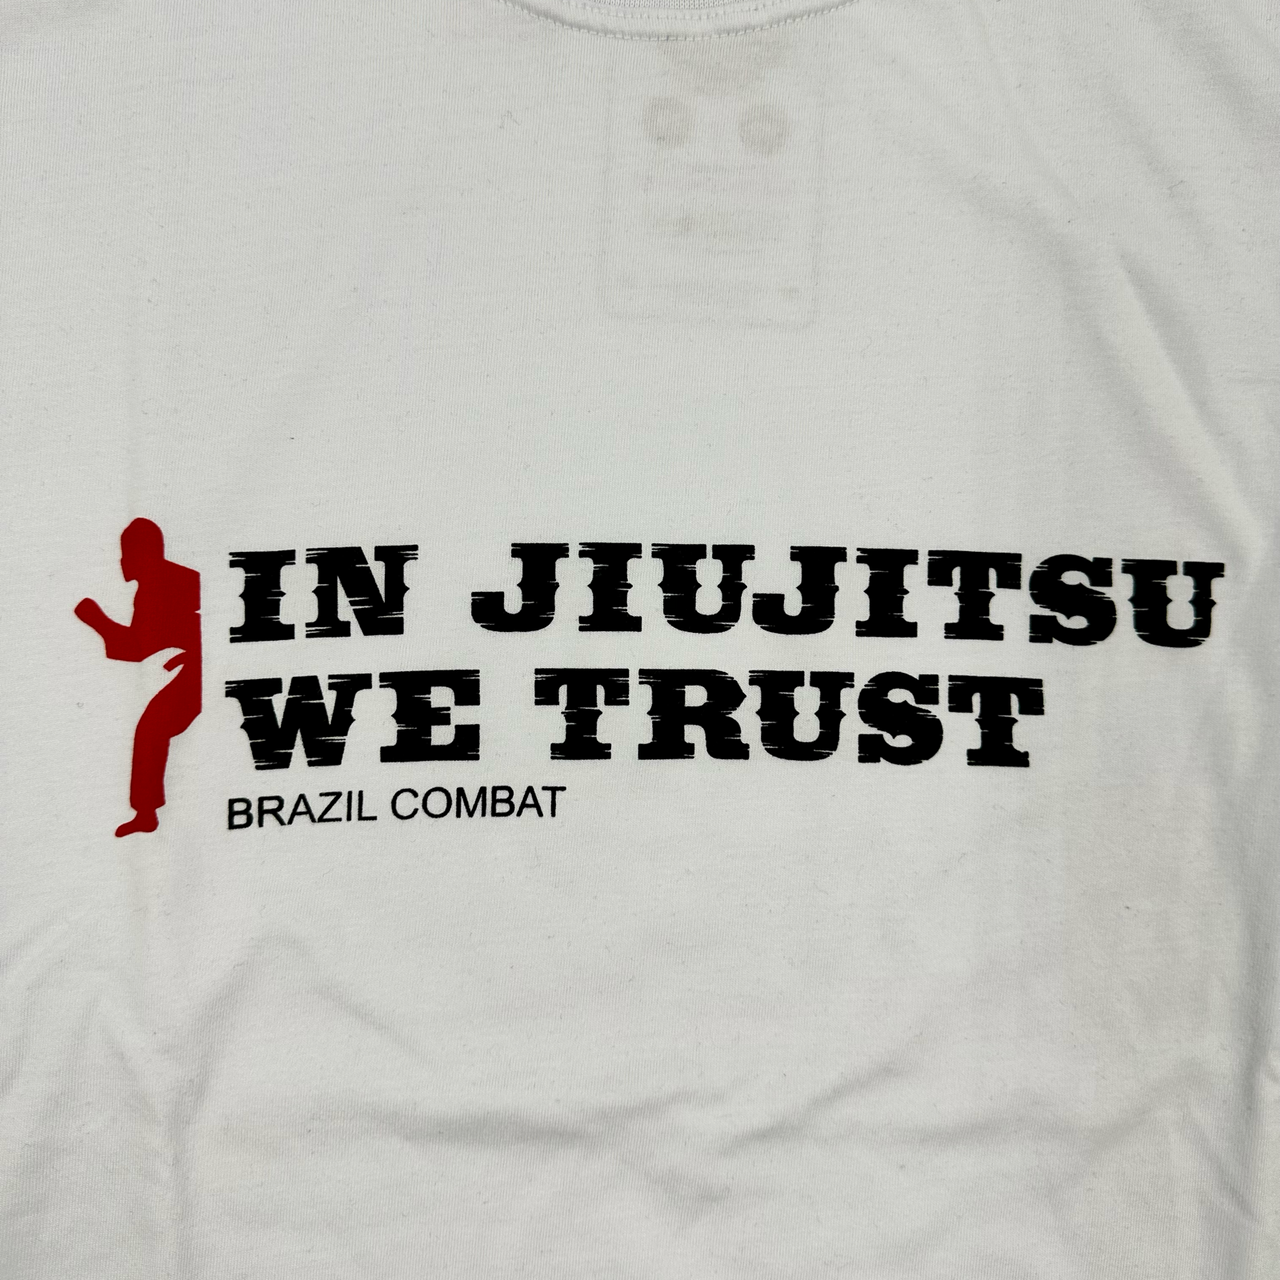 In Jiu-Jitsu we trust T-shirt